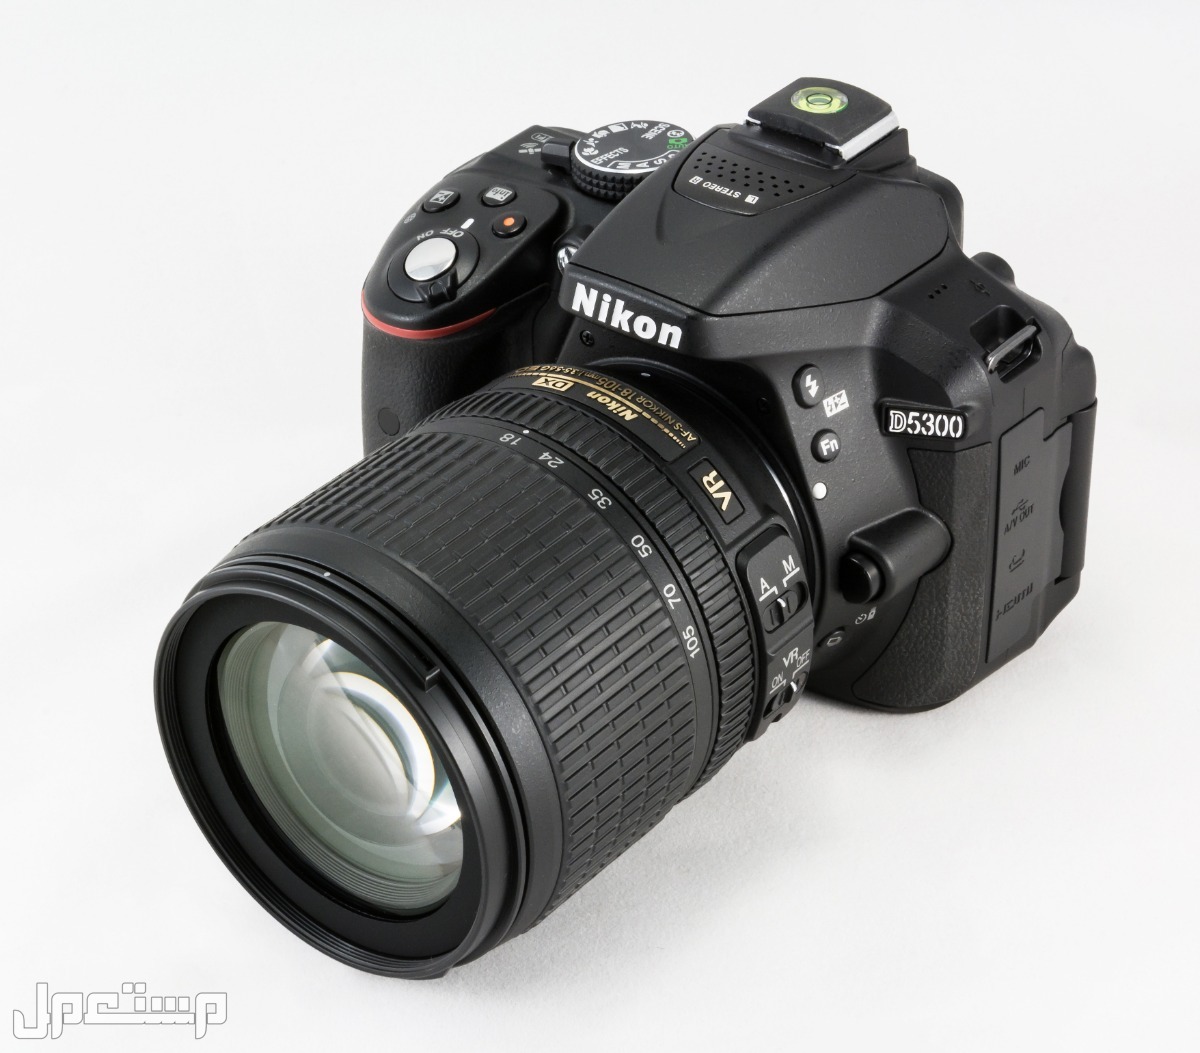 مواصفات ومميزات وأسعار أفضل أنواع كاميرات نيكون للمحترفين في تونس كاميرا Nikon D5300